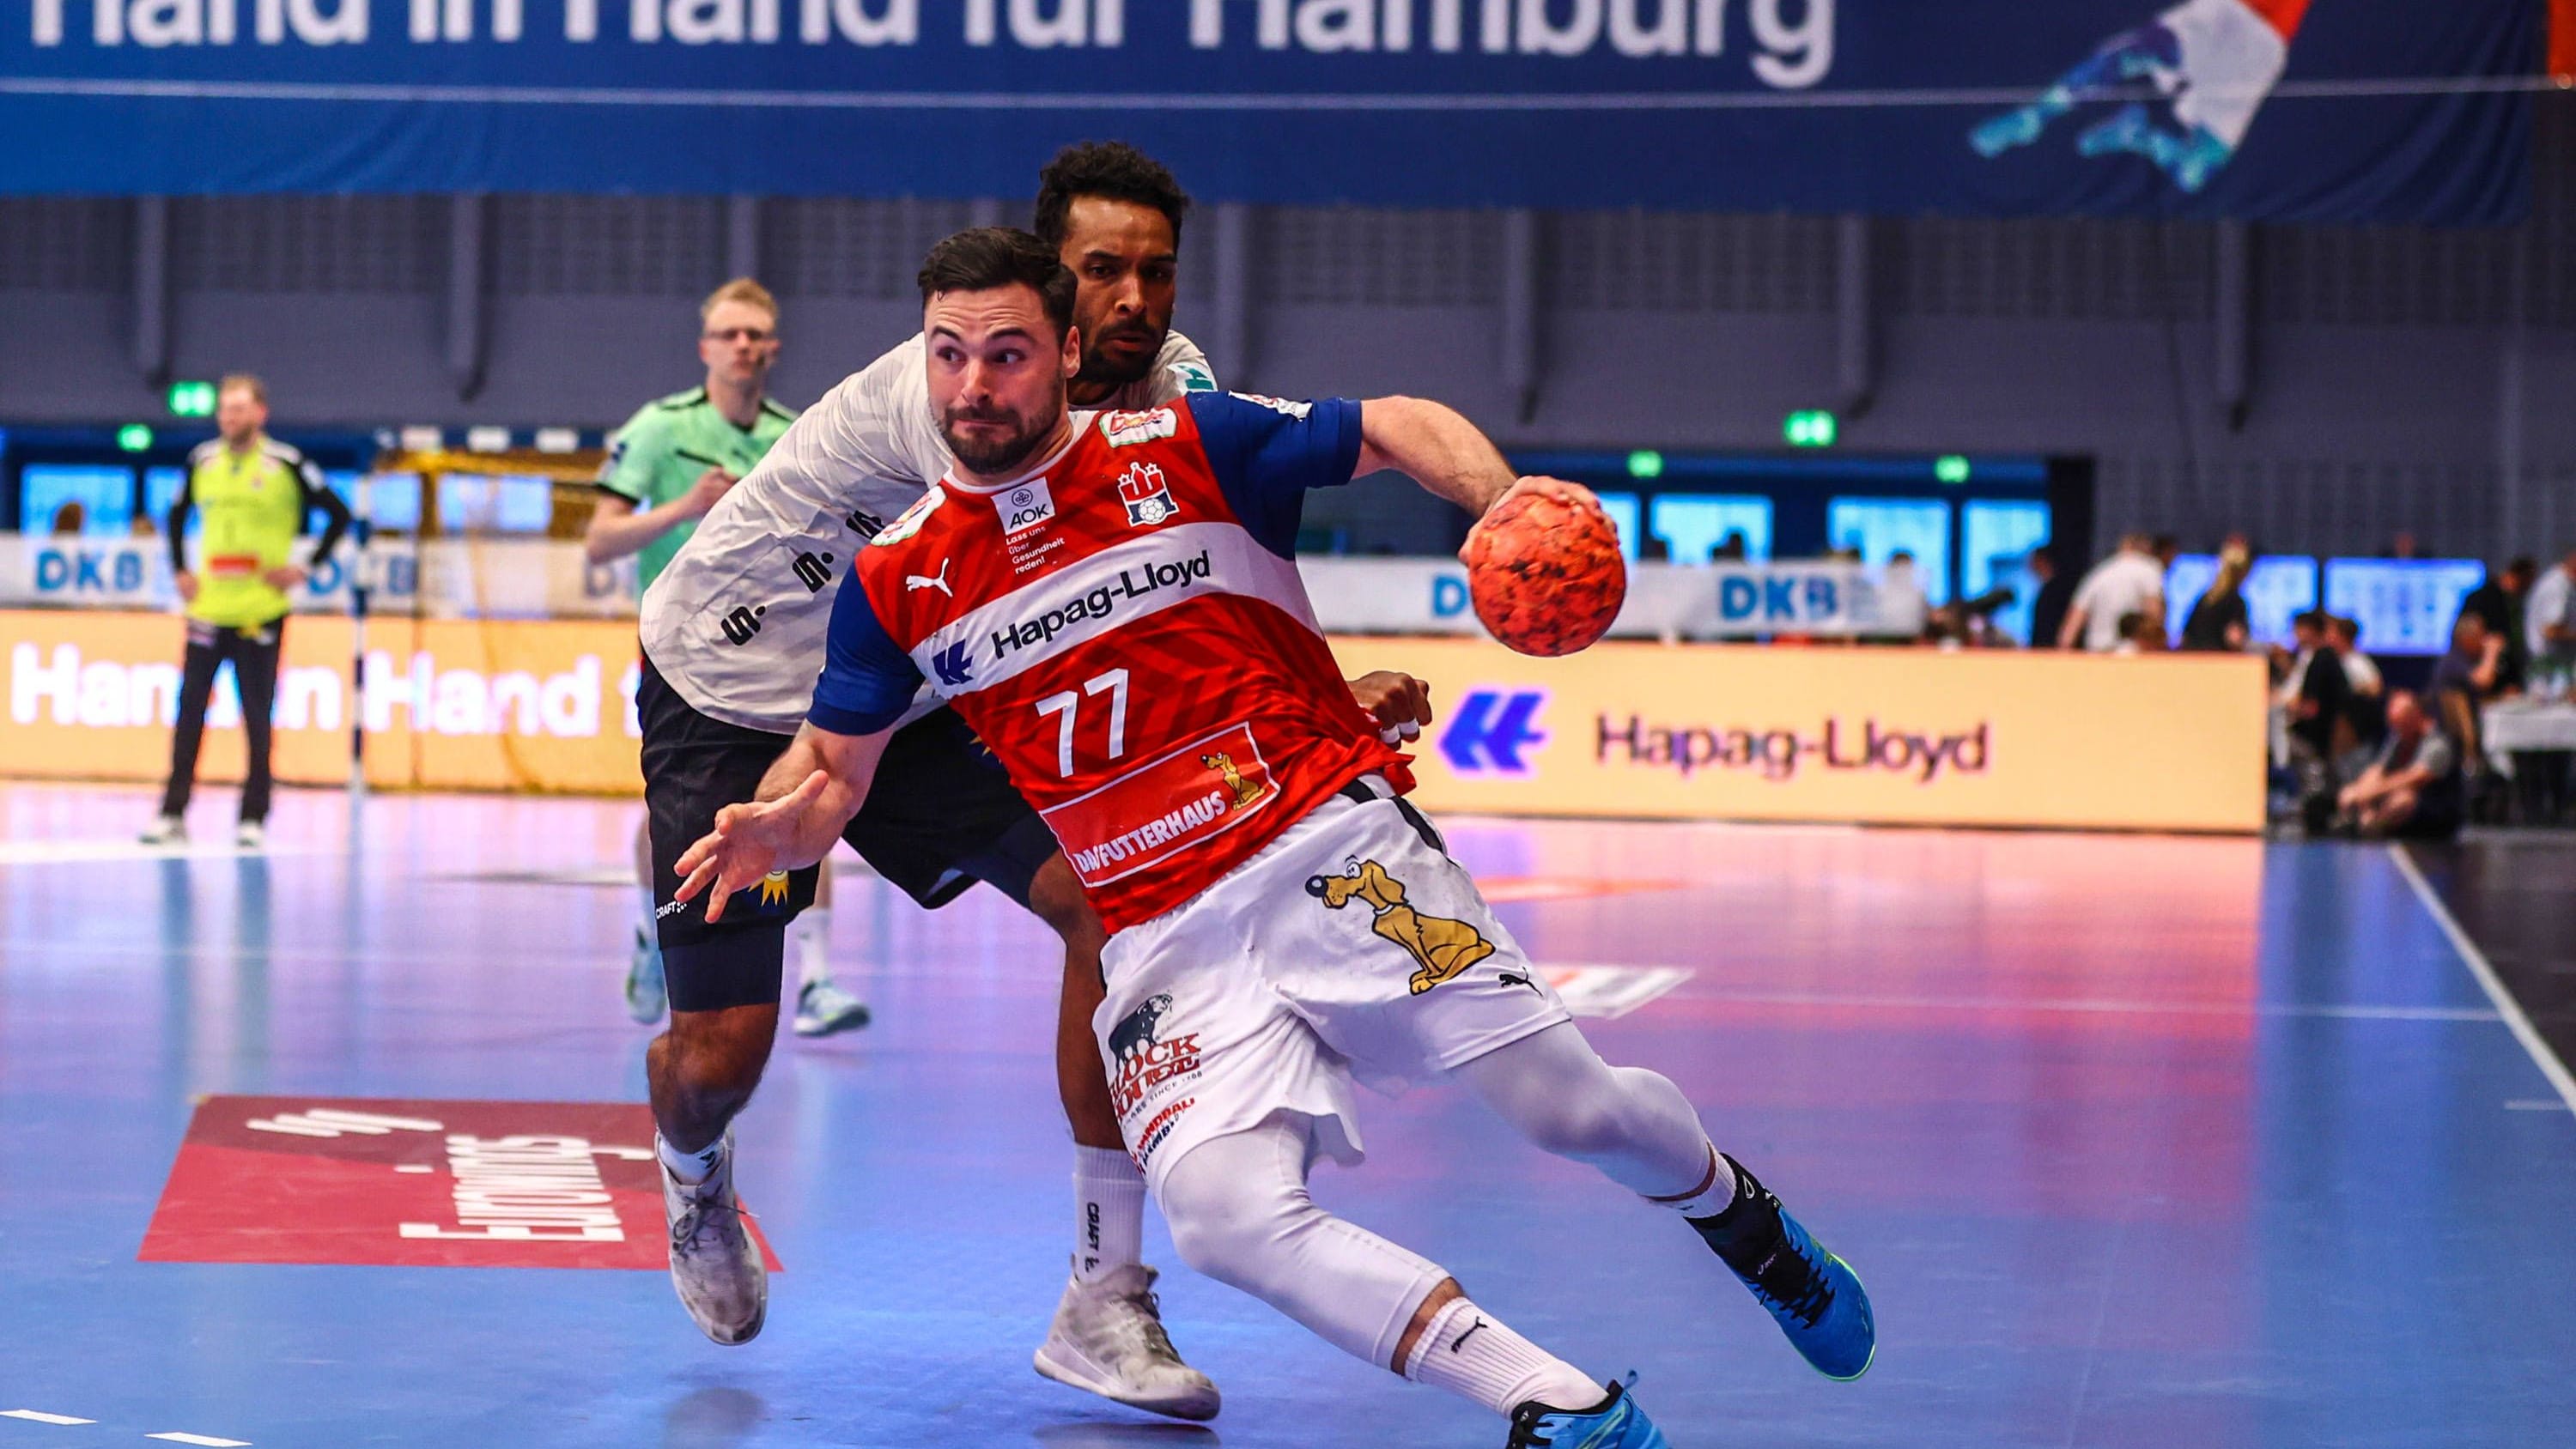 Handball-Bundesliga: HSV Hamburg erhält keine Lizenz für neue Saison